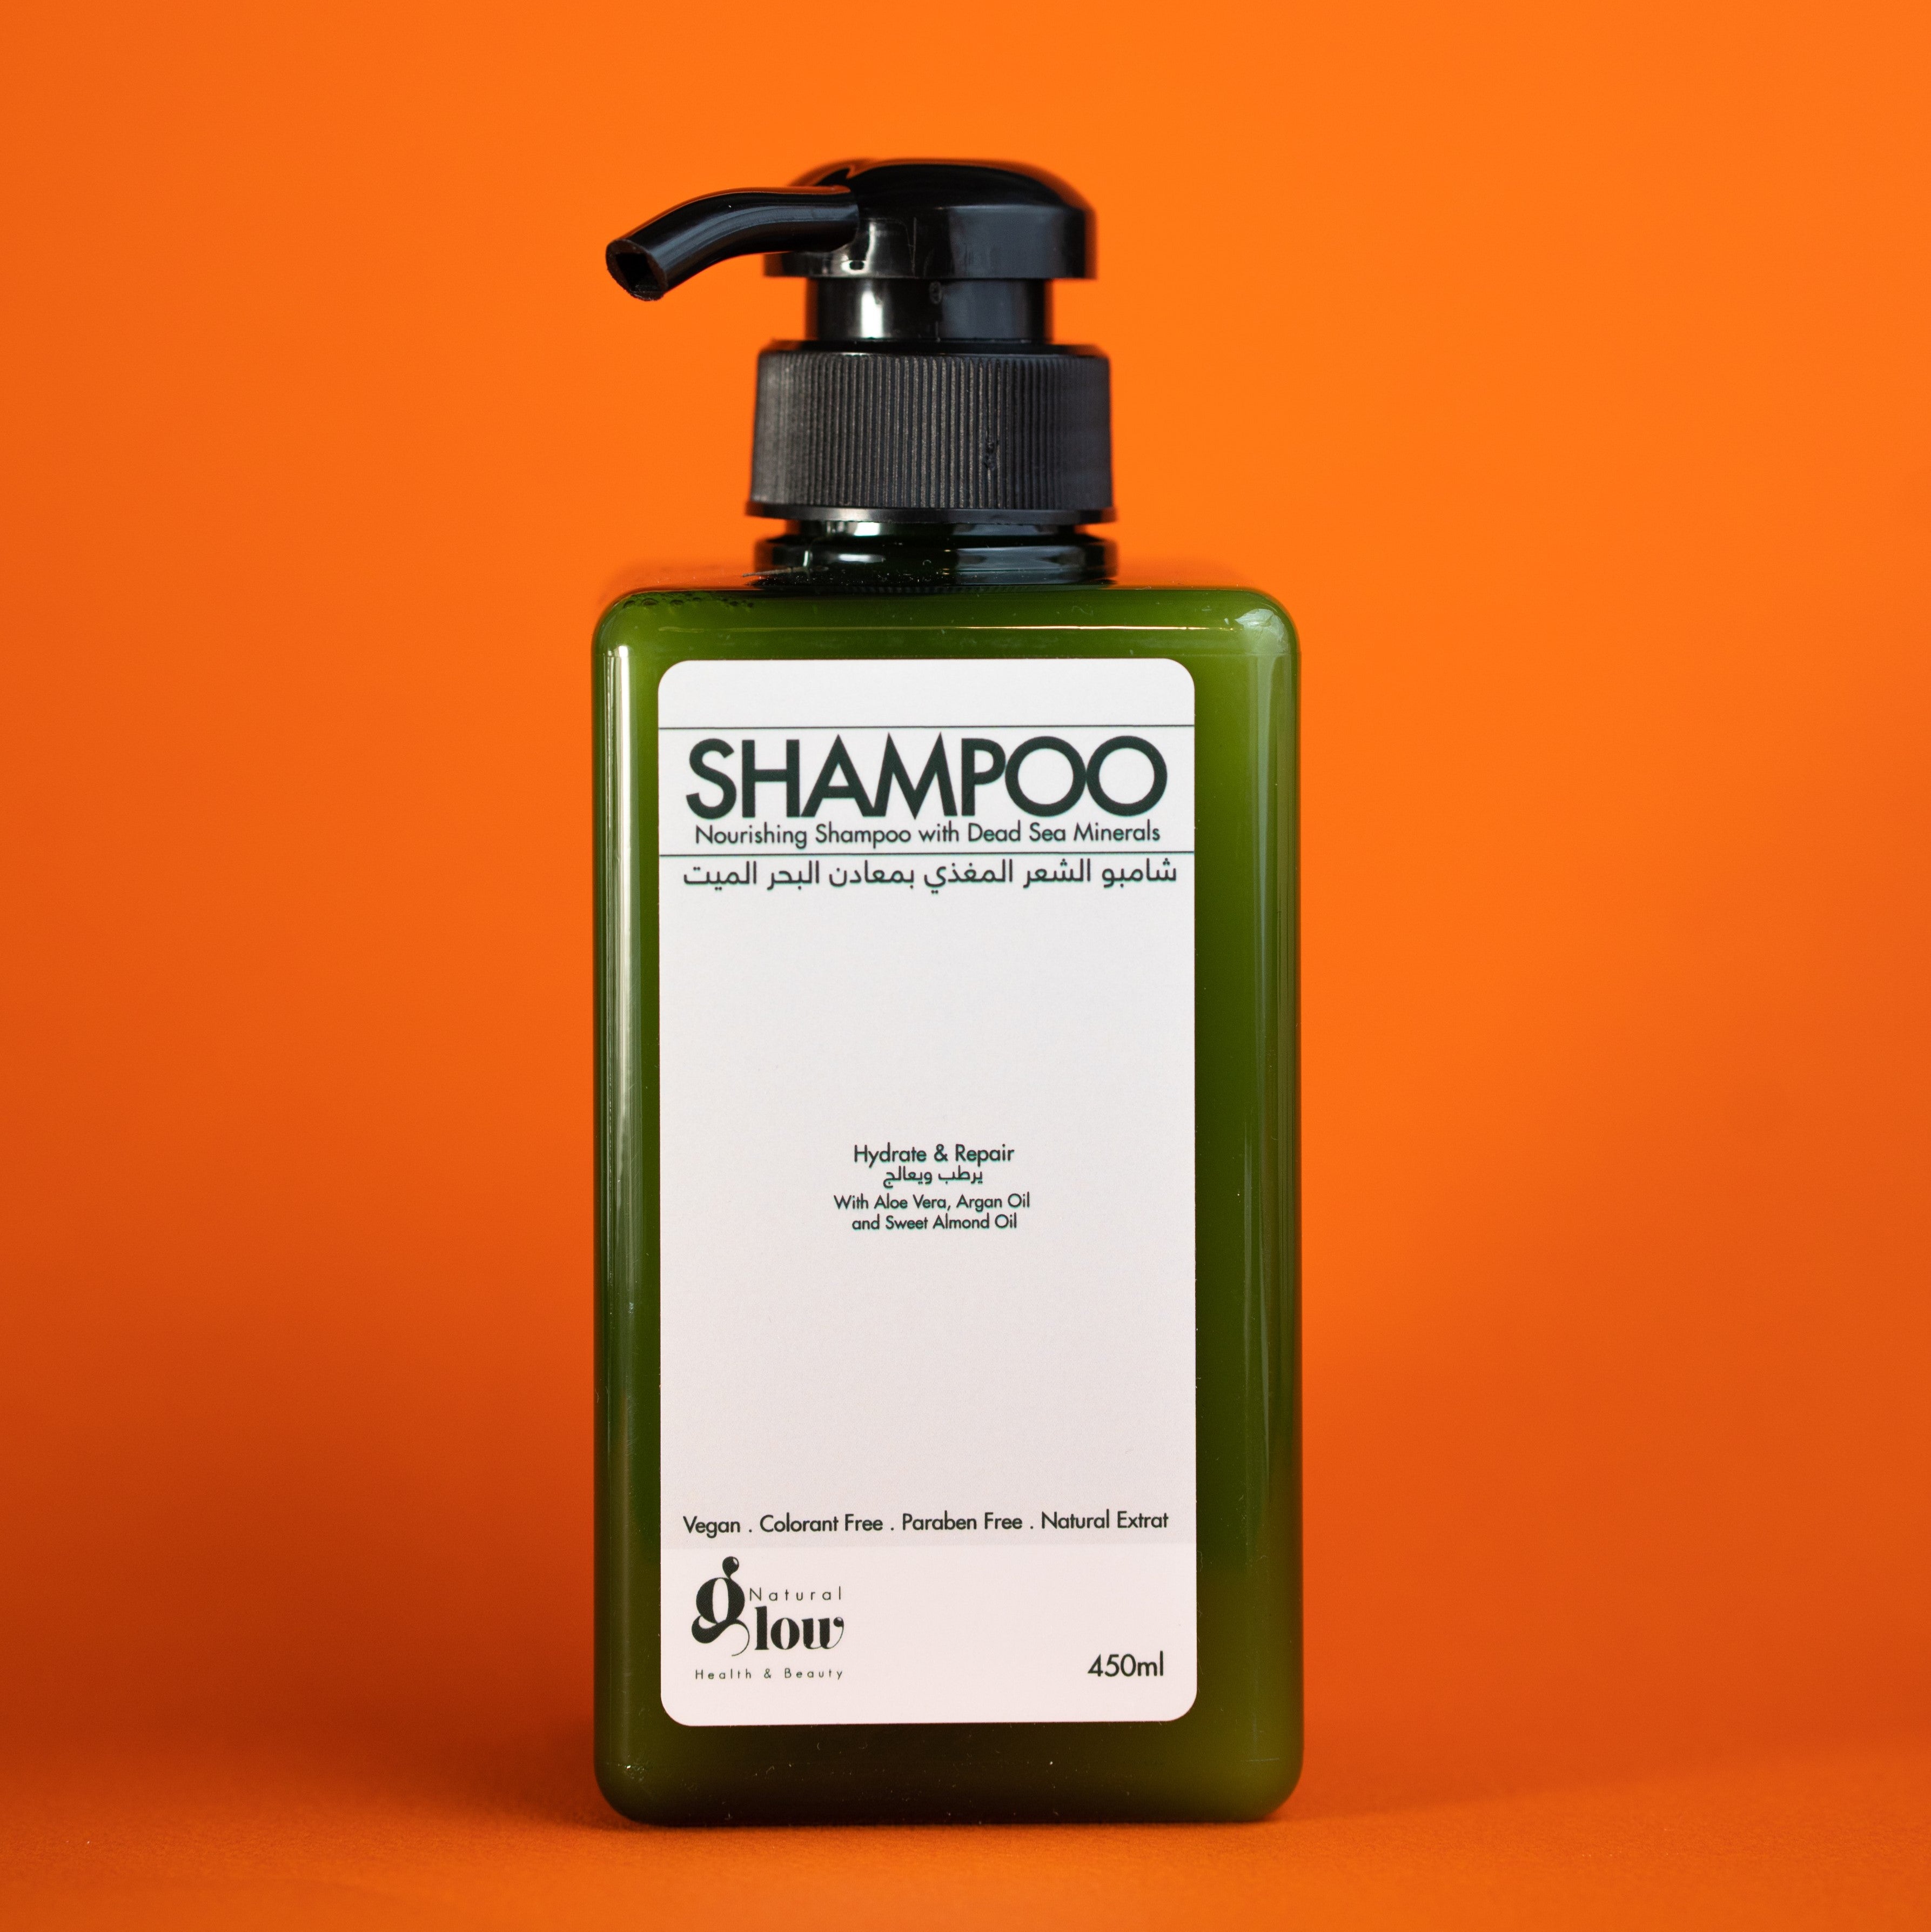 Nourishing Shampoo with Dead Sea Minerals